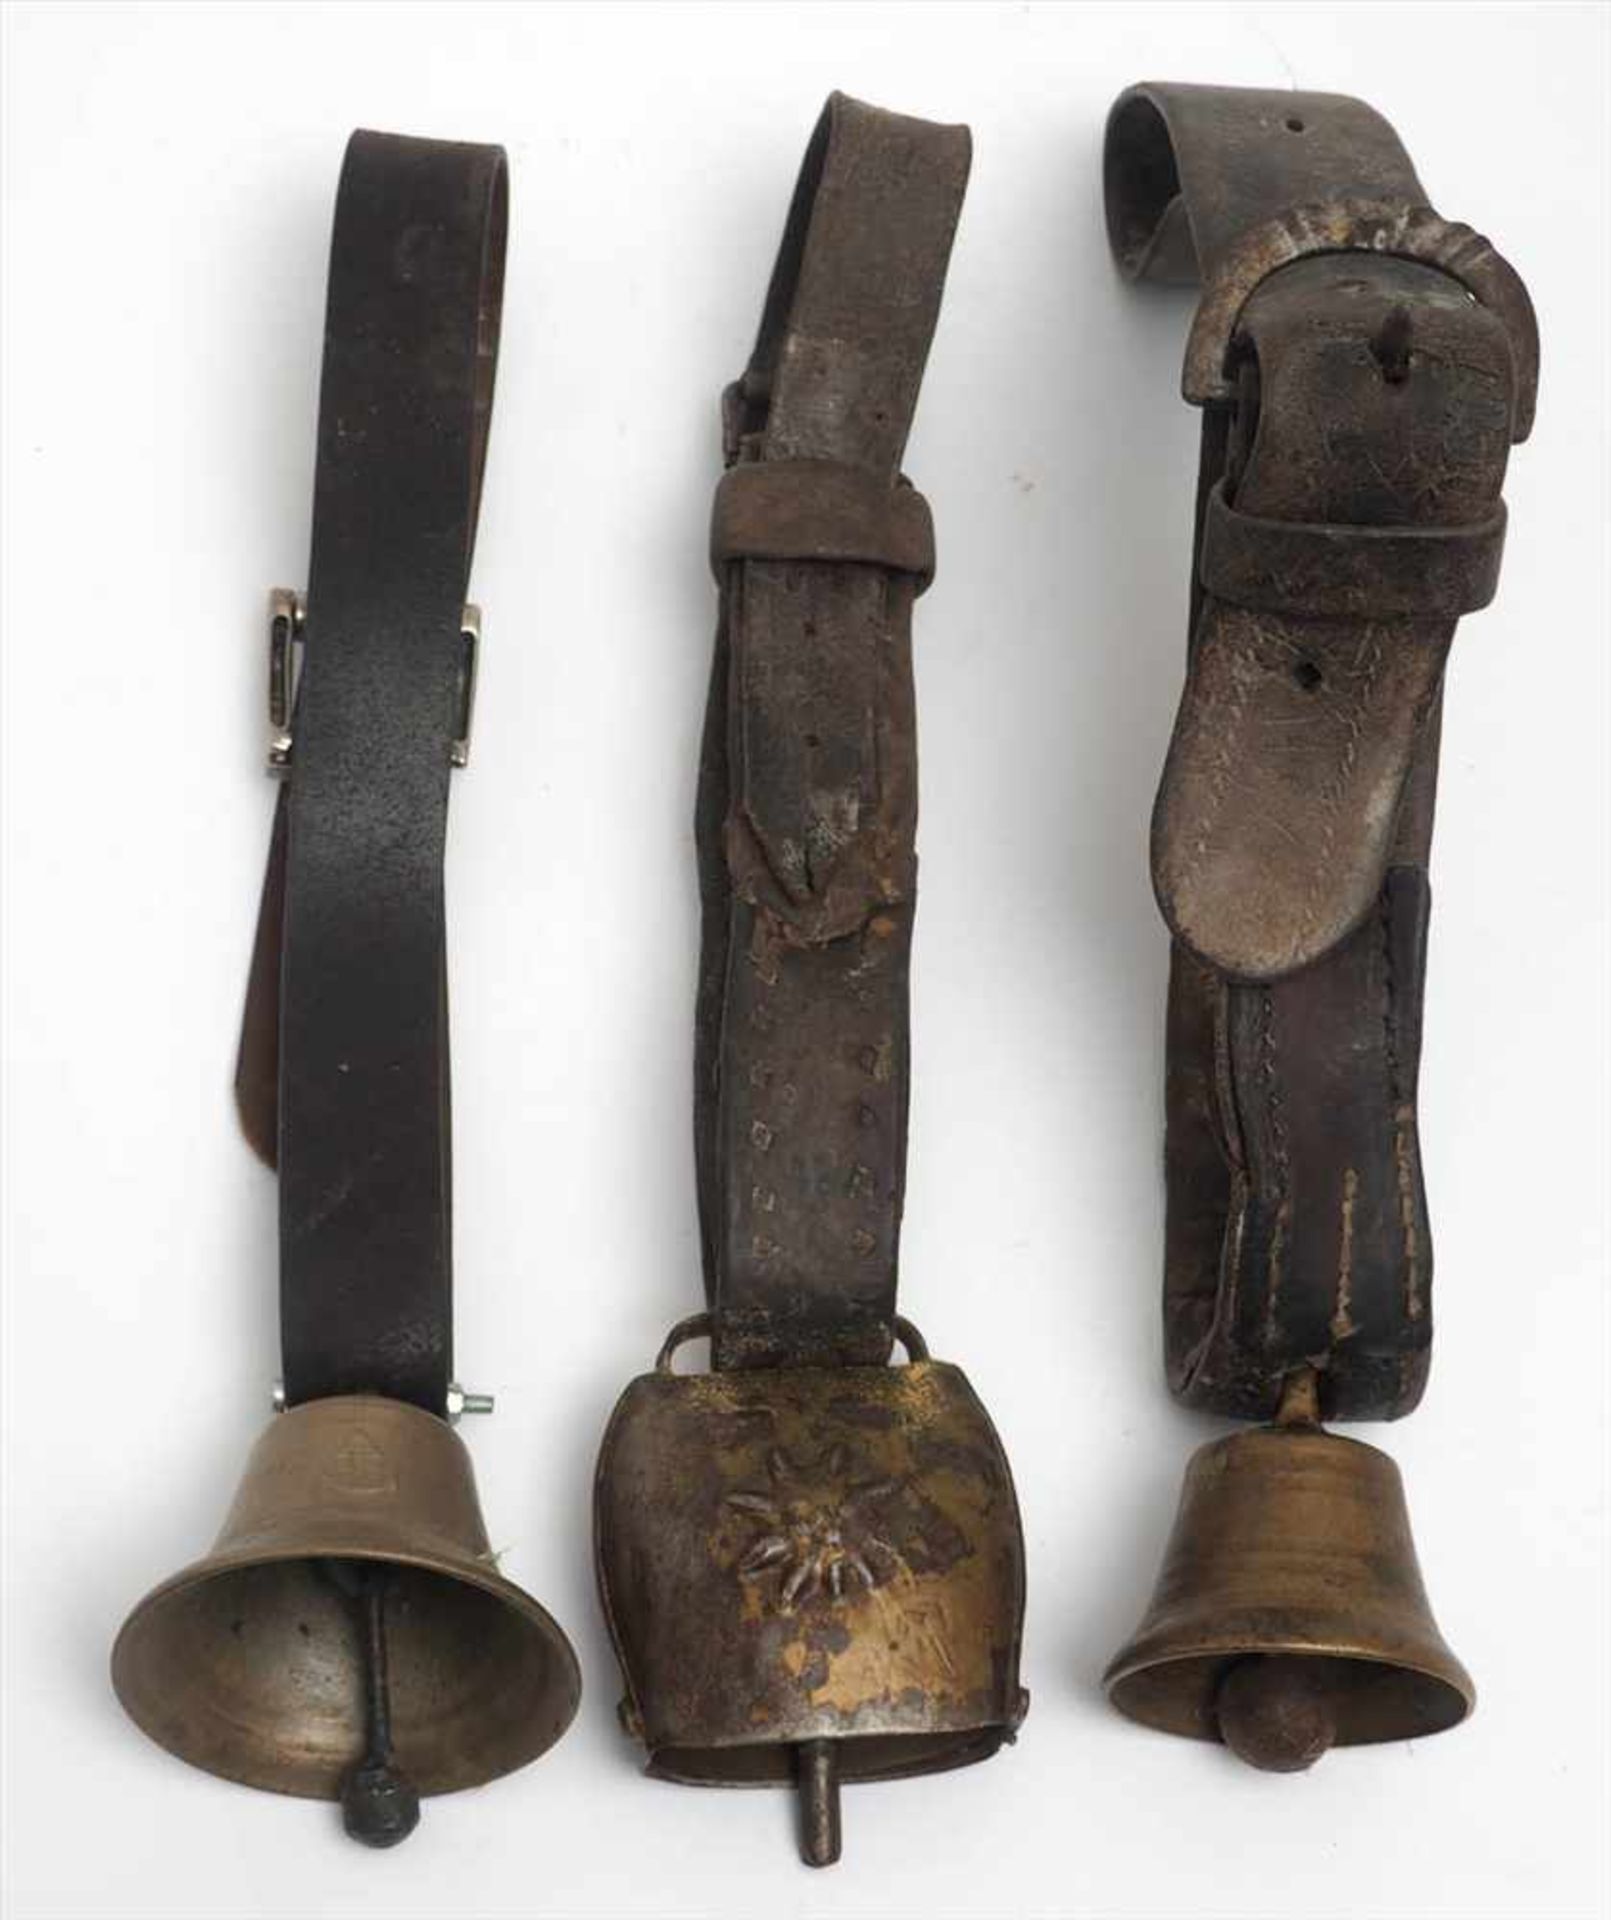 Drei KuhglockenH.8, 11 bzw. 7cm. Eine mit metallbeschlagenem Lederband.